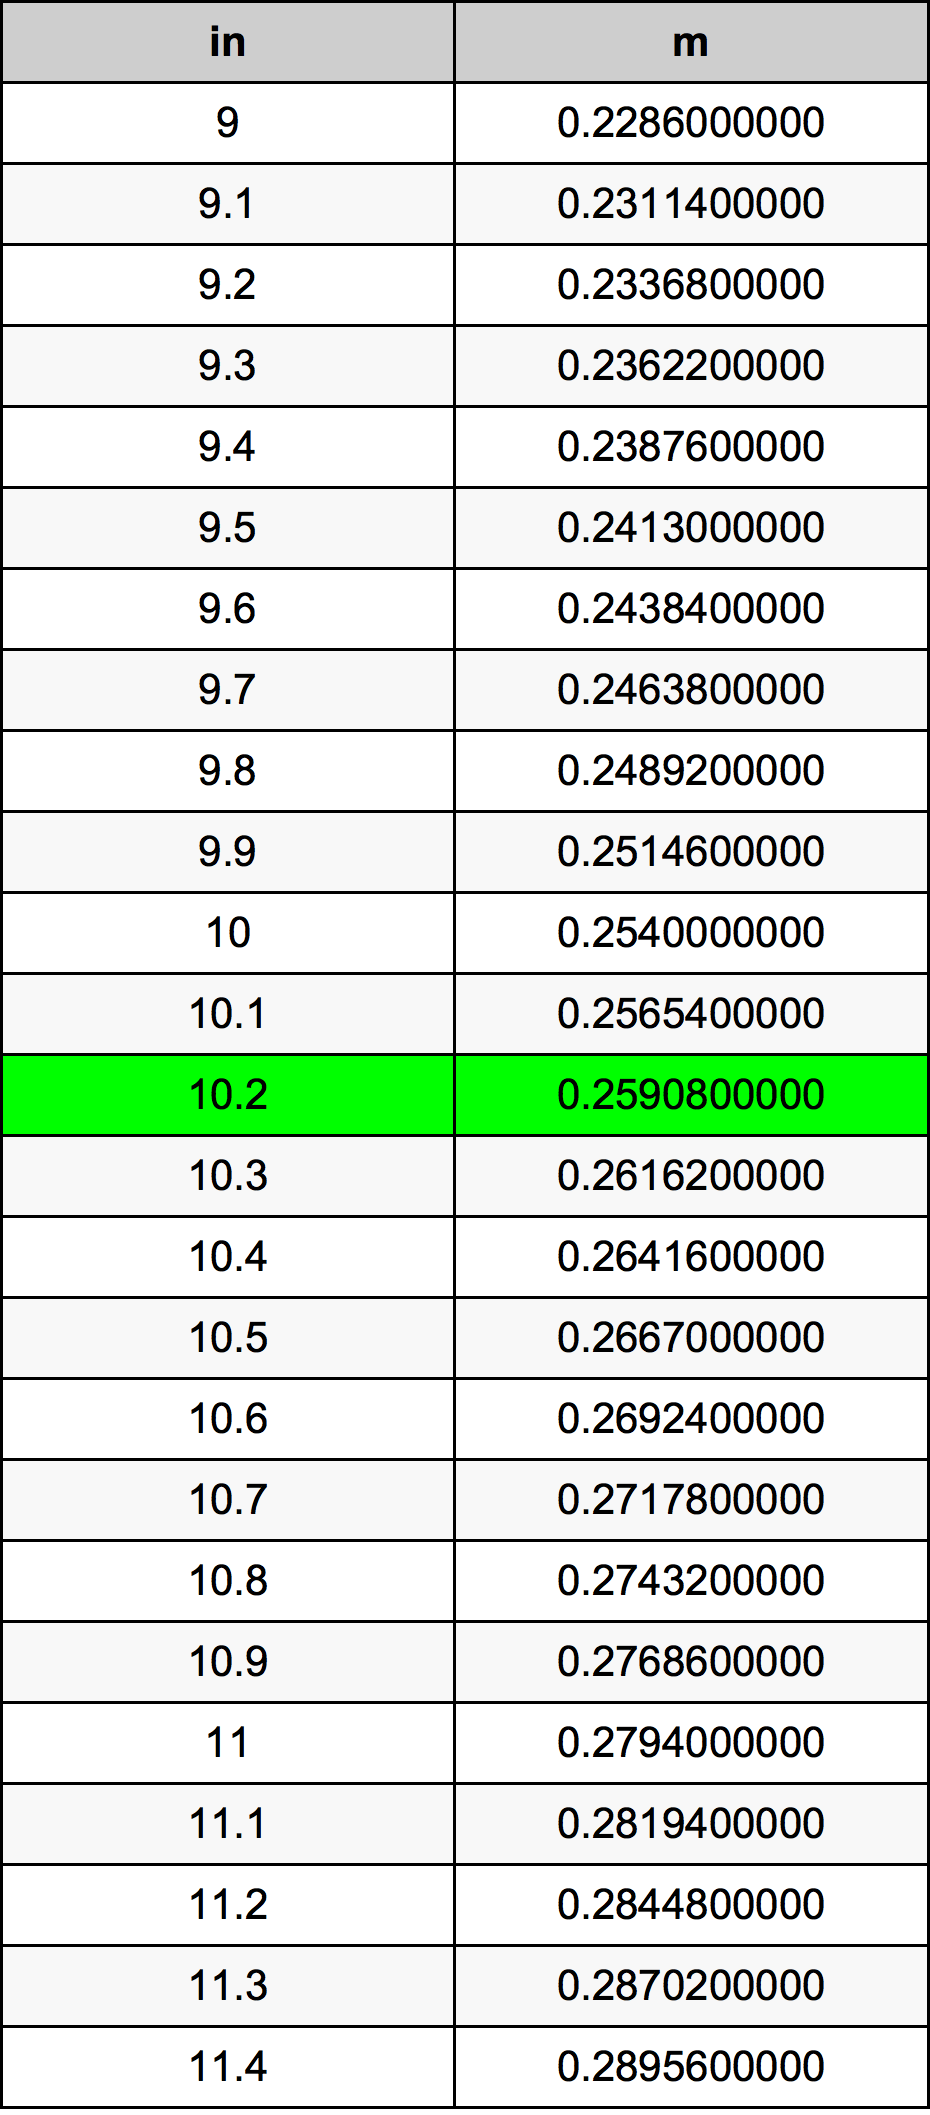 10.2 Pulzier konverżjoni tabella